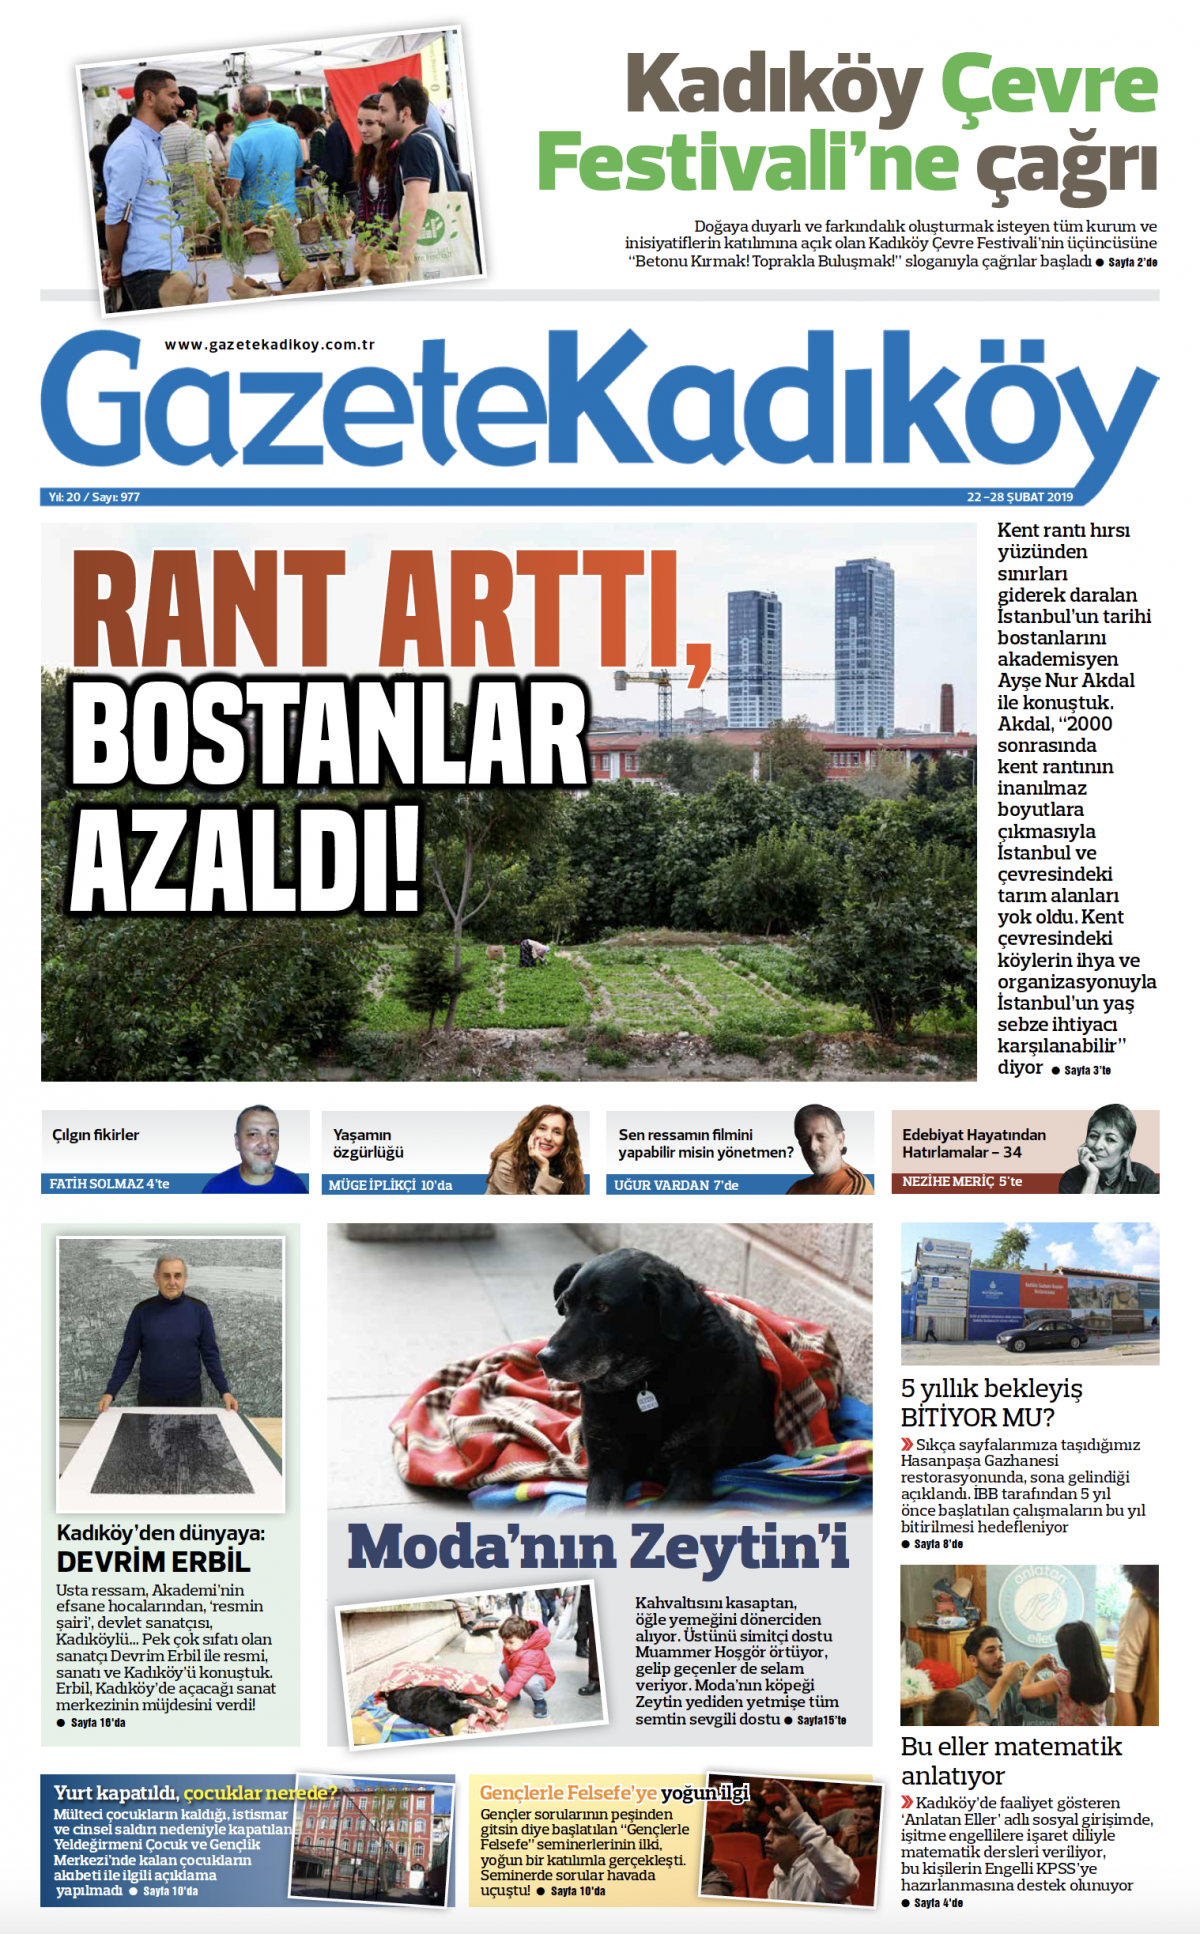 Gazete Kadıköy - 977. SAYI